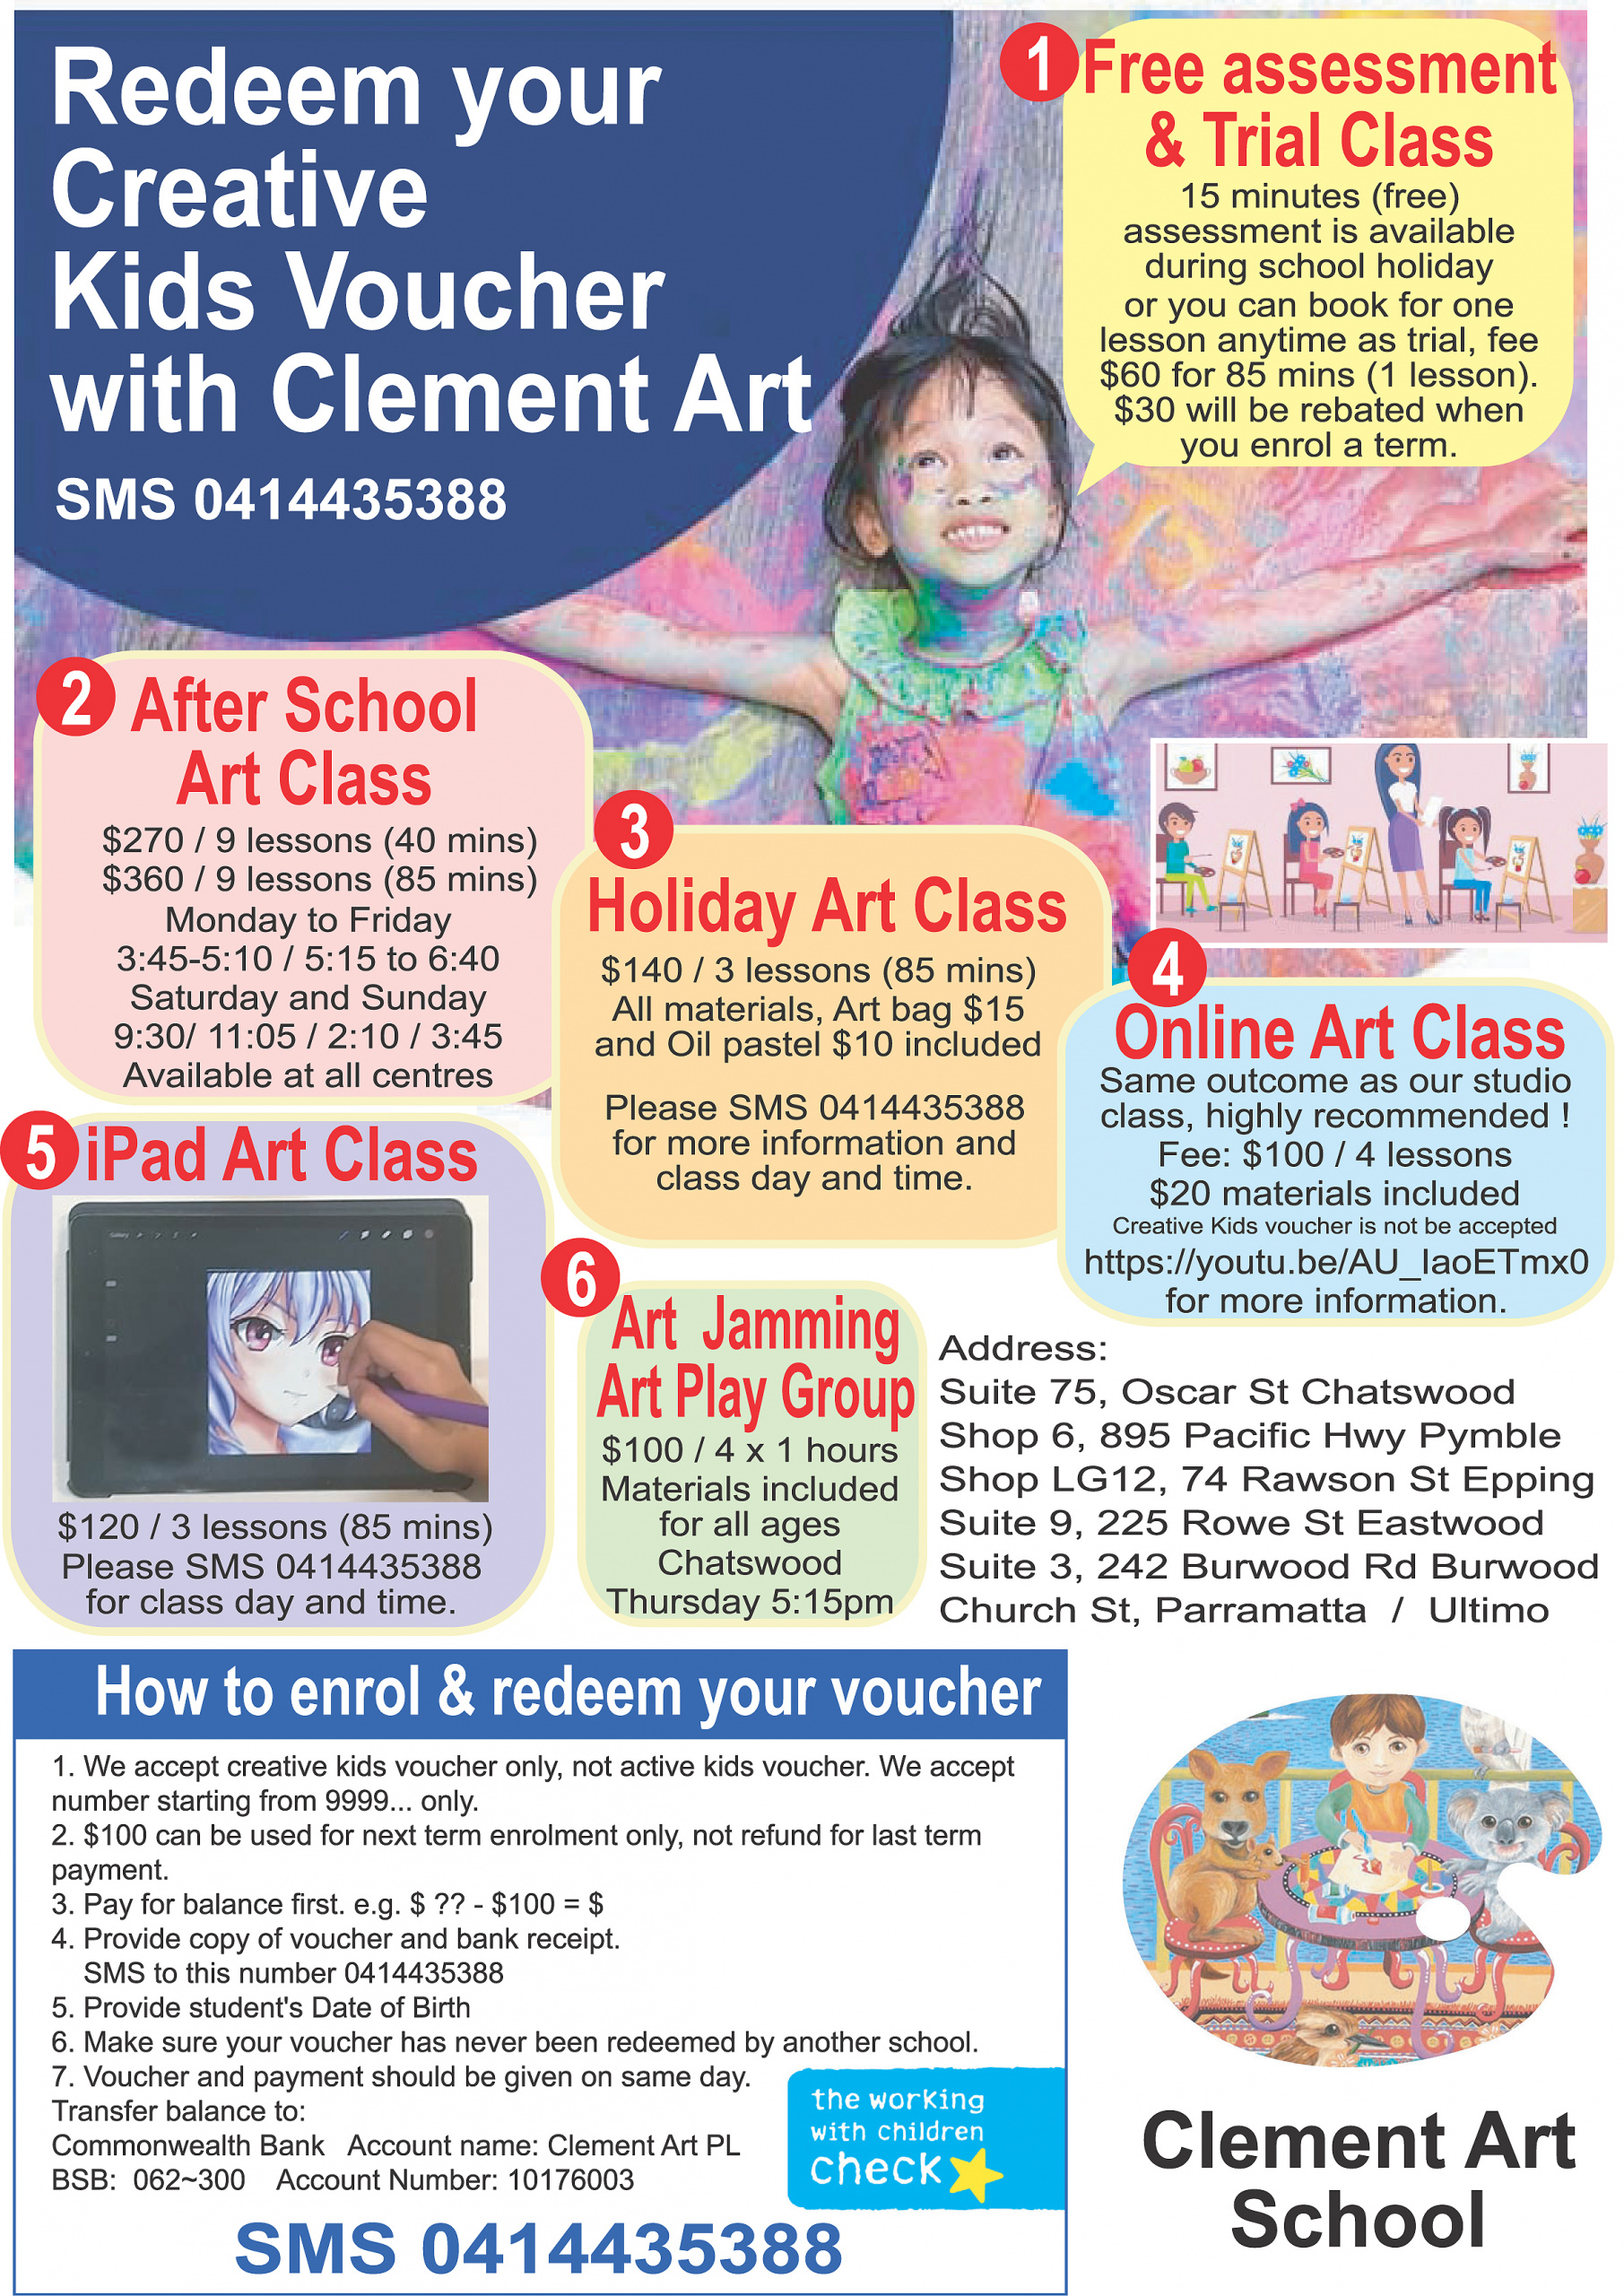 Creative kids voucher for art class | Clement Art School